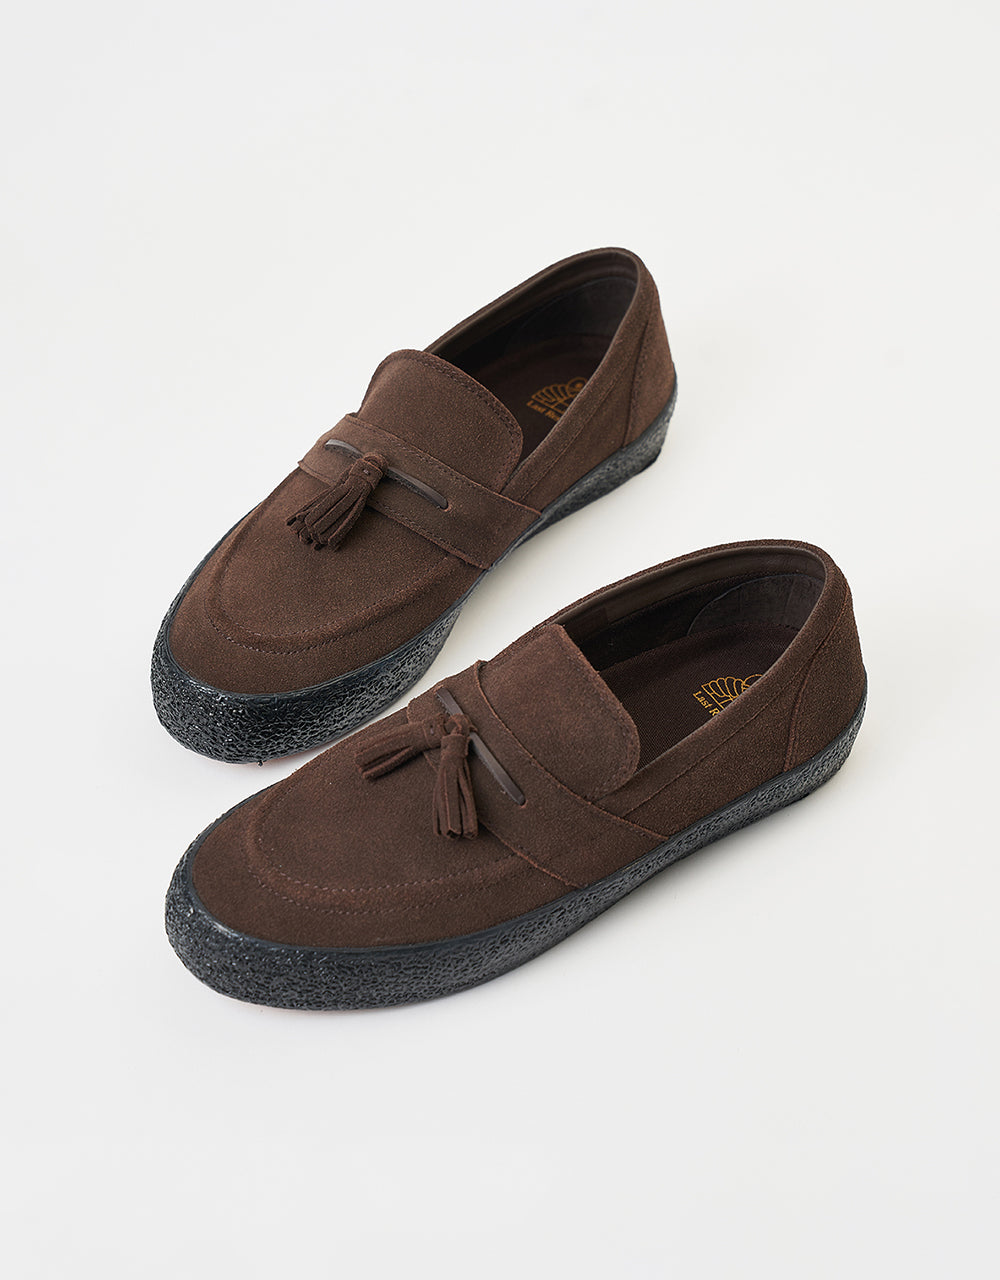 Last Resort AB VM005 Loafer Skate Shoes - Brown/Black